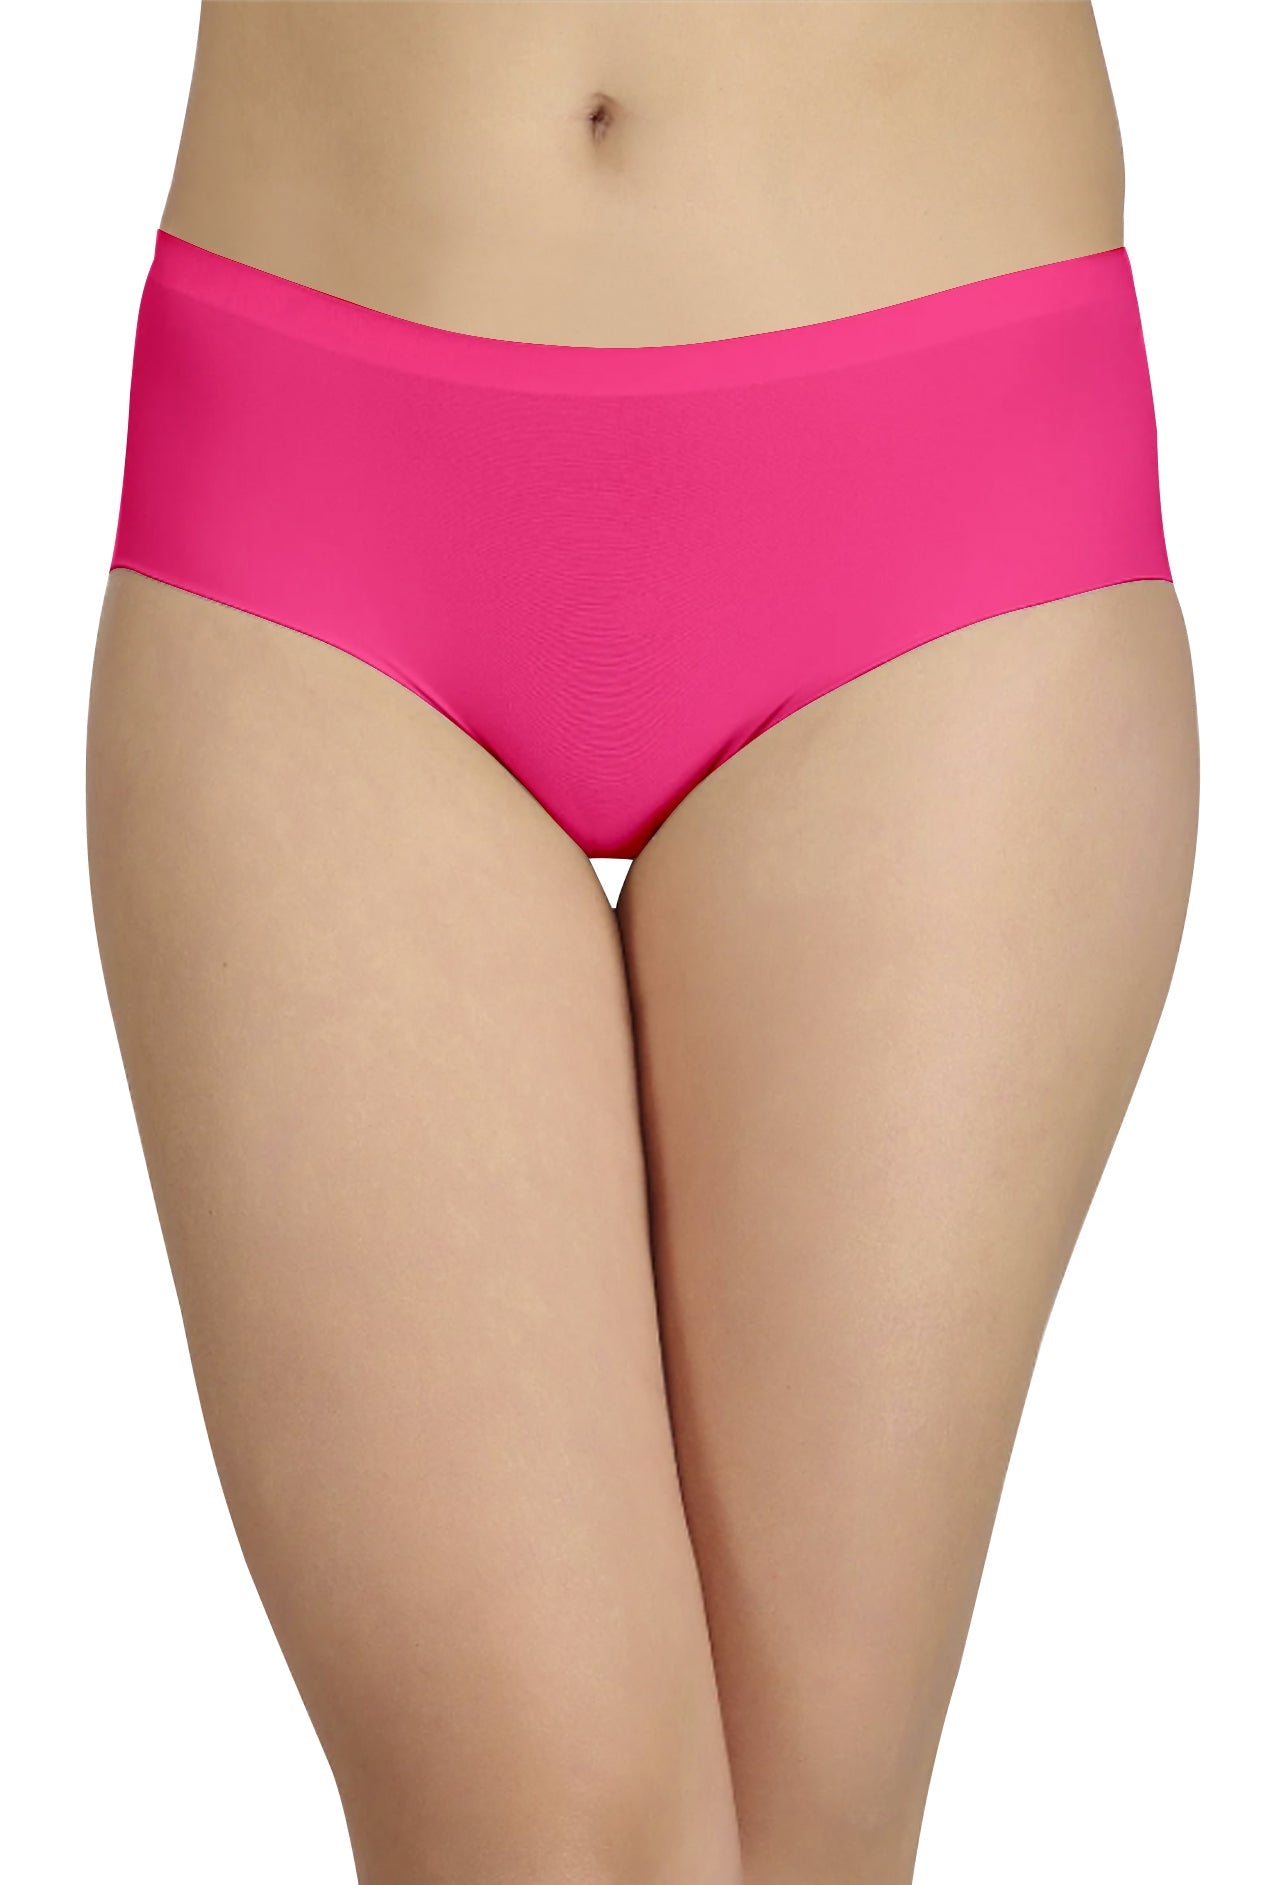 Panties - Buy Sona Womens Seamless Premium No Line Panty